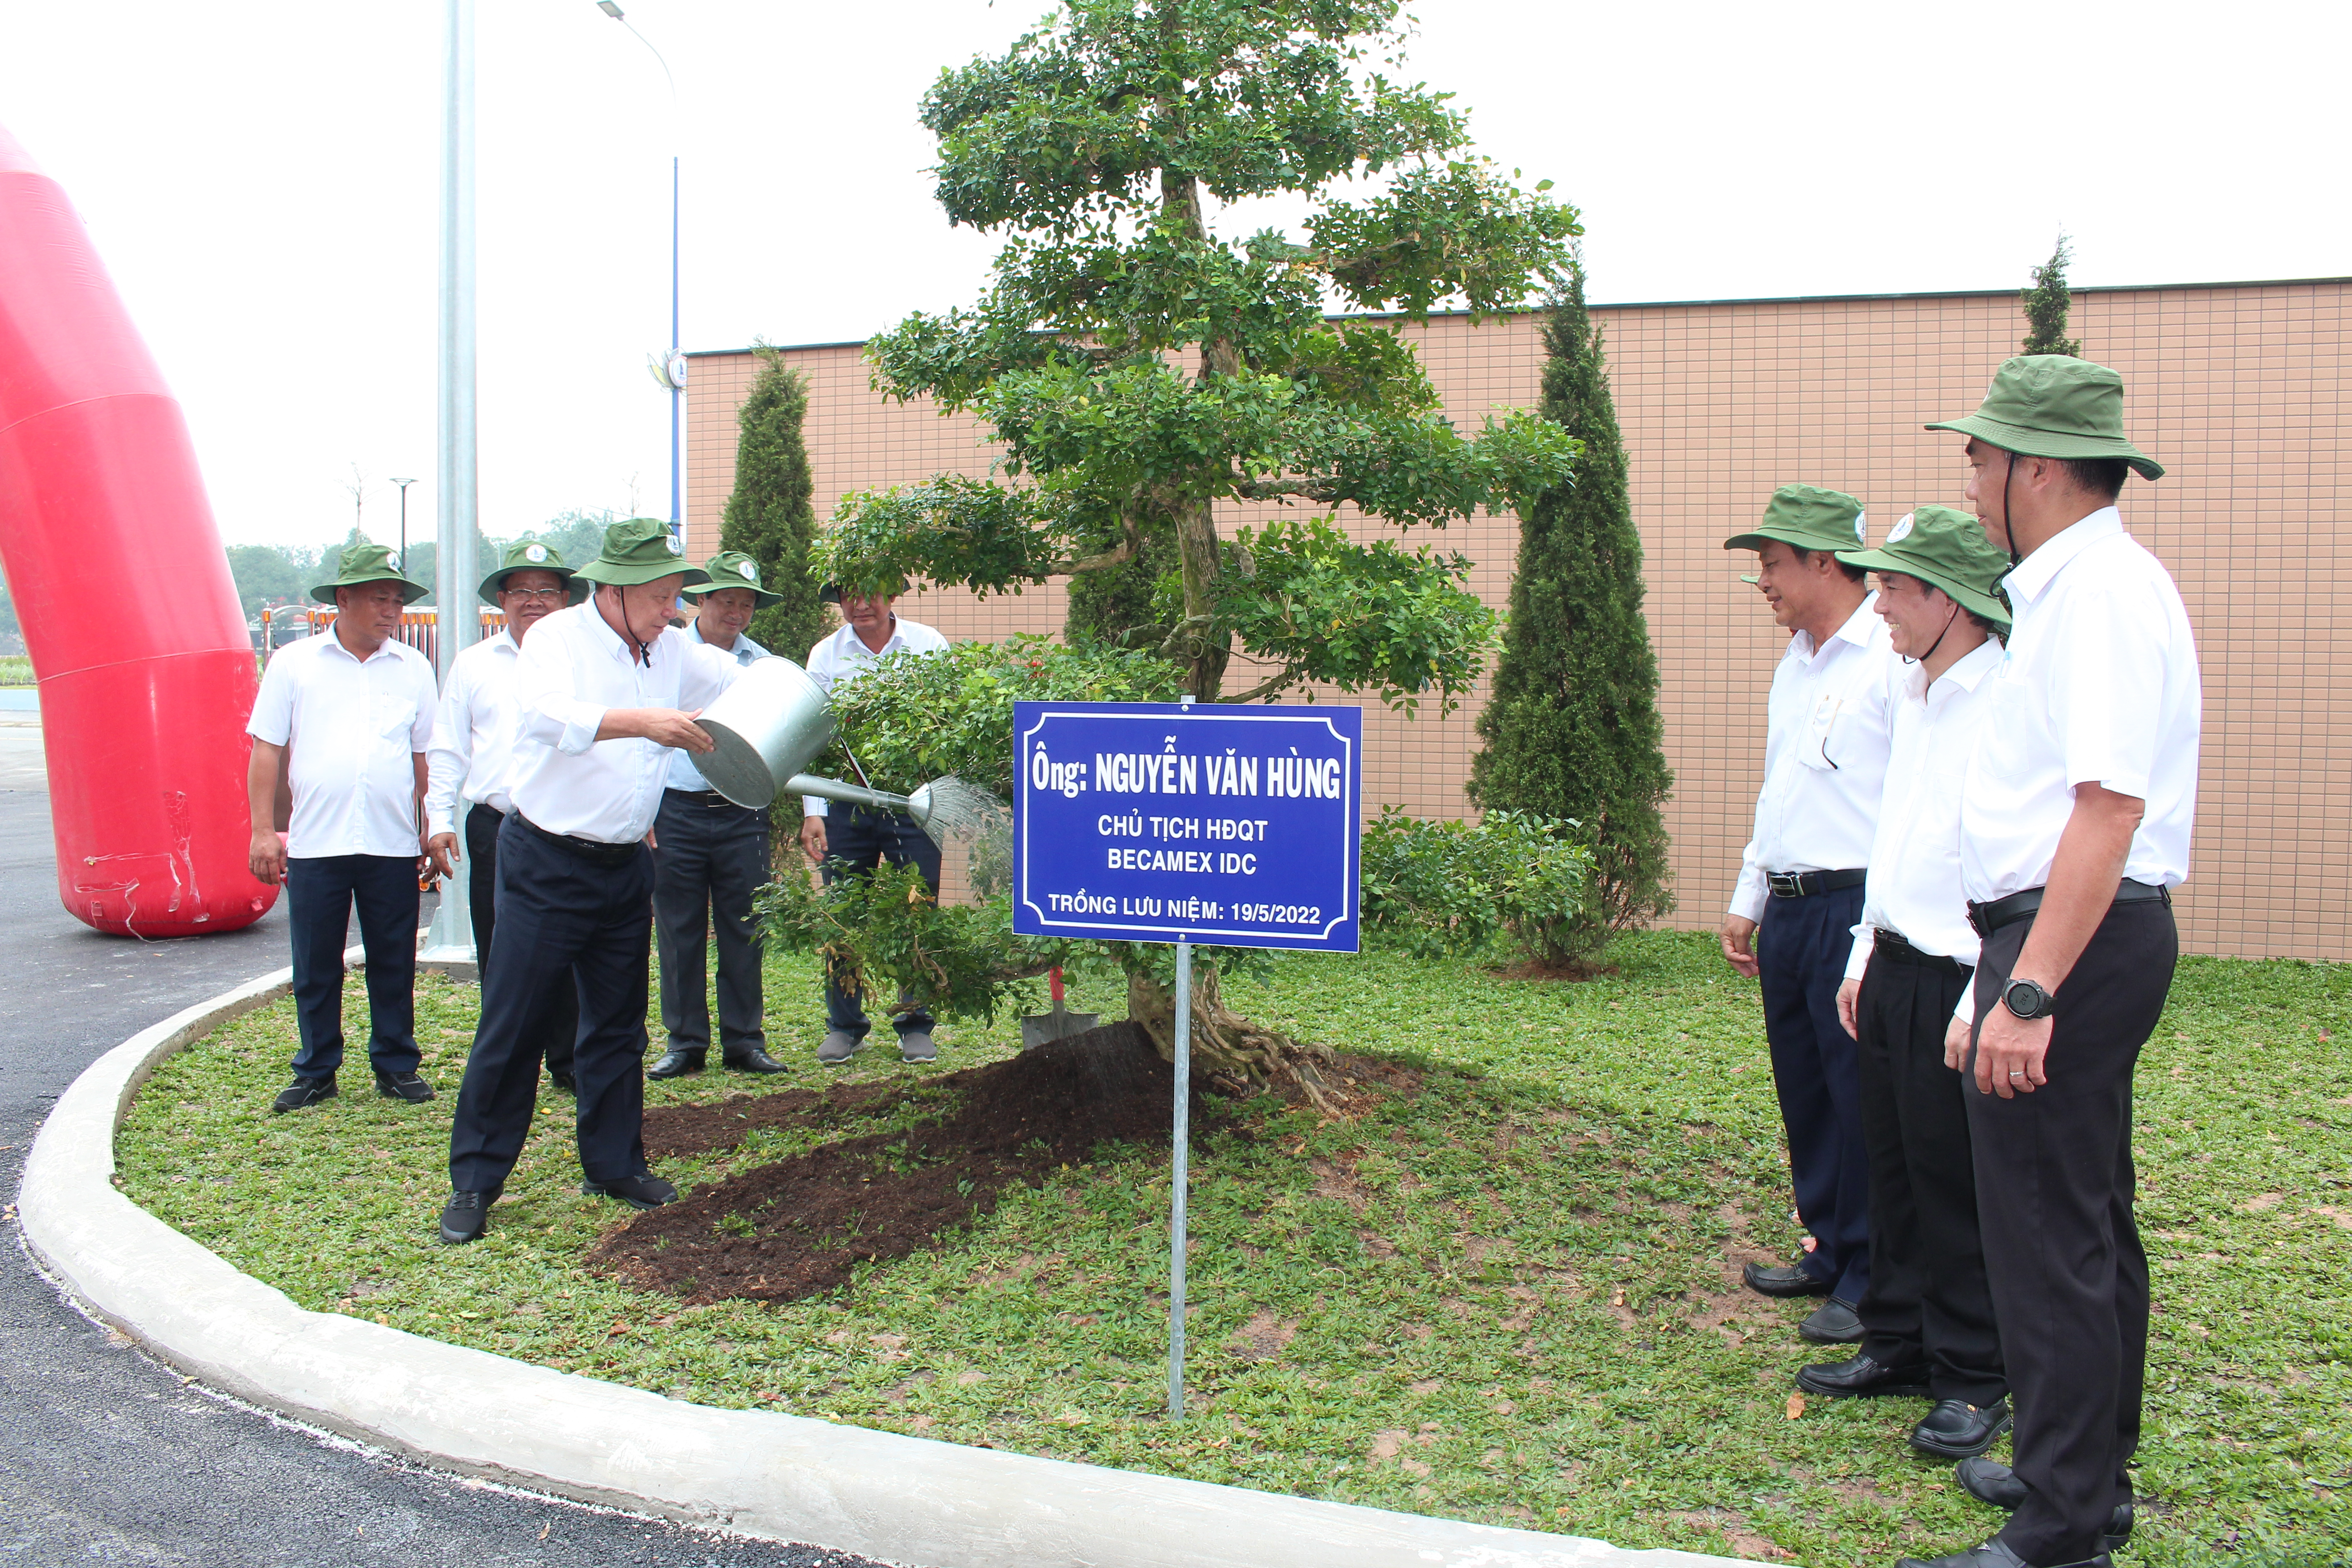 Ông Nguyễn Văn Hùng - Chủ tịch HĐQT Công ty Becamex IDC - CTCP tham gia trồng cây xanh trong khuôn viên Tòa nhà Trung tâm Hành chính huyện Bàu Bàng.